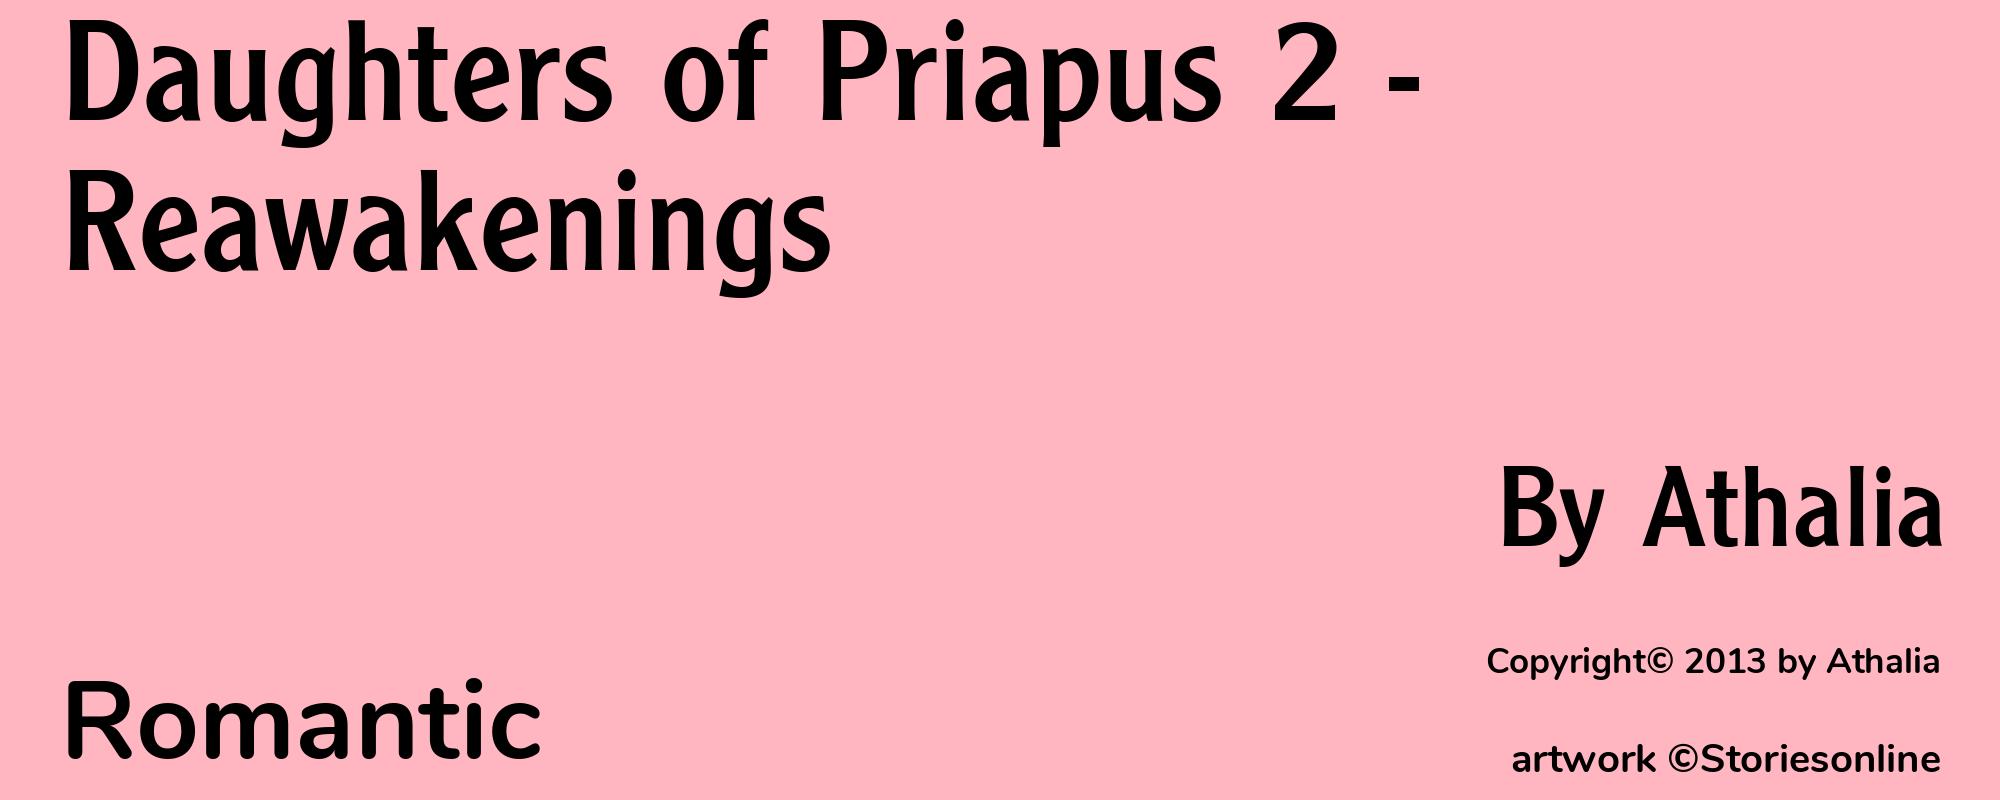 Daughters of Priapus 2 - Reawakenings - Cover